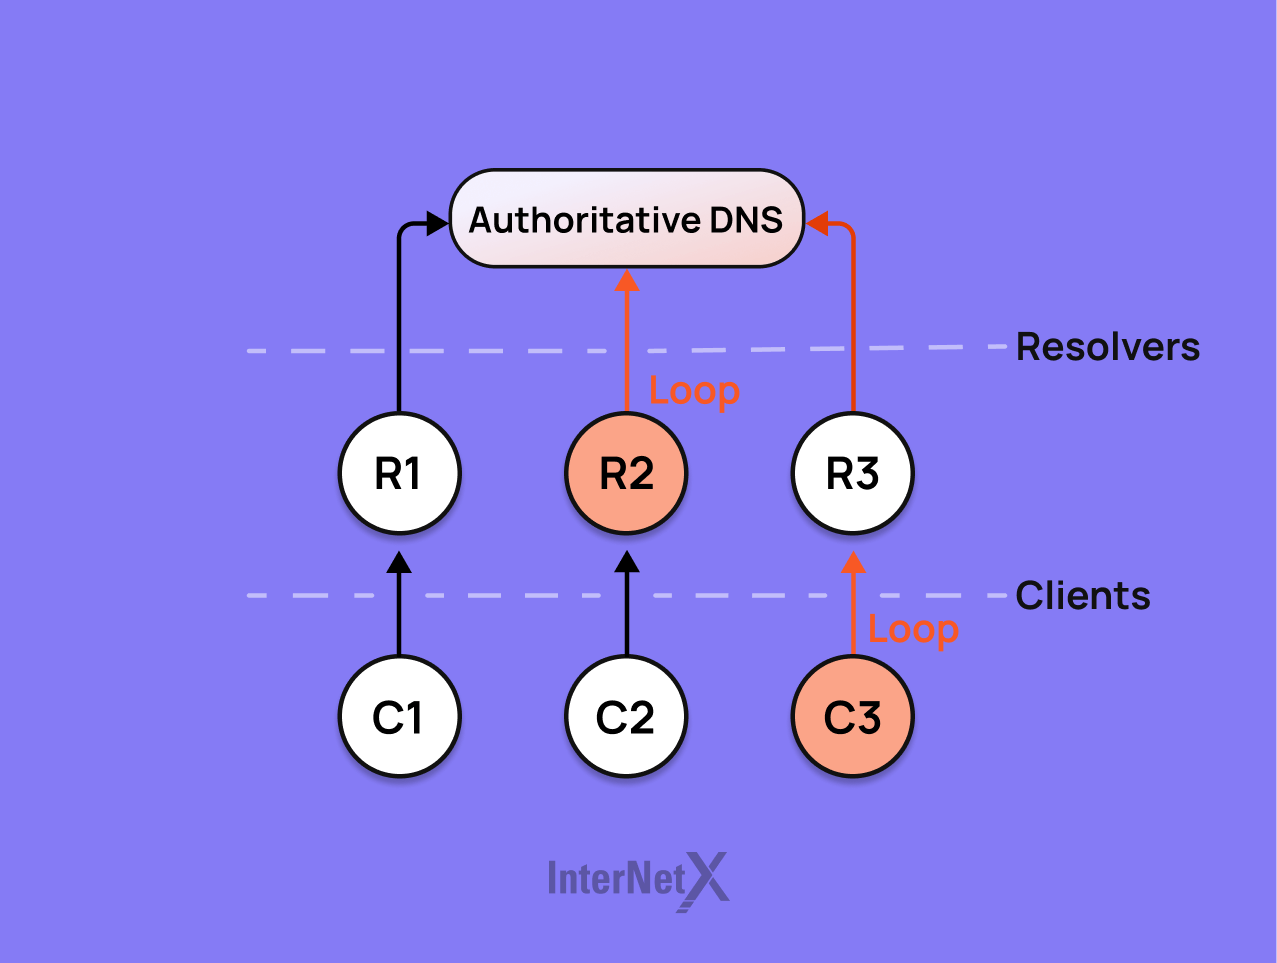 Der autoritative DNS ist ein DNS-Server, der die endgültige Autorität über eine oder mehrere Domains hat und ihre offiziellen IP-Adressen kennt.